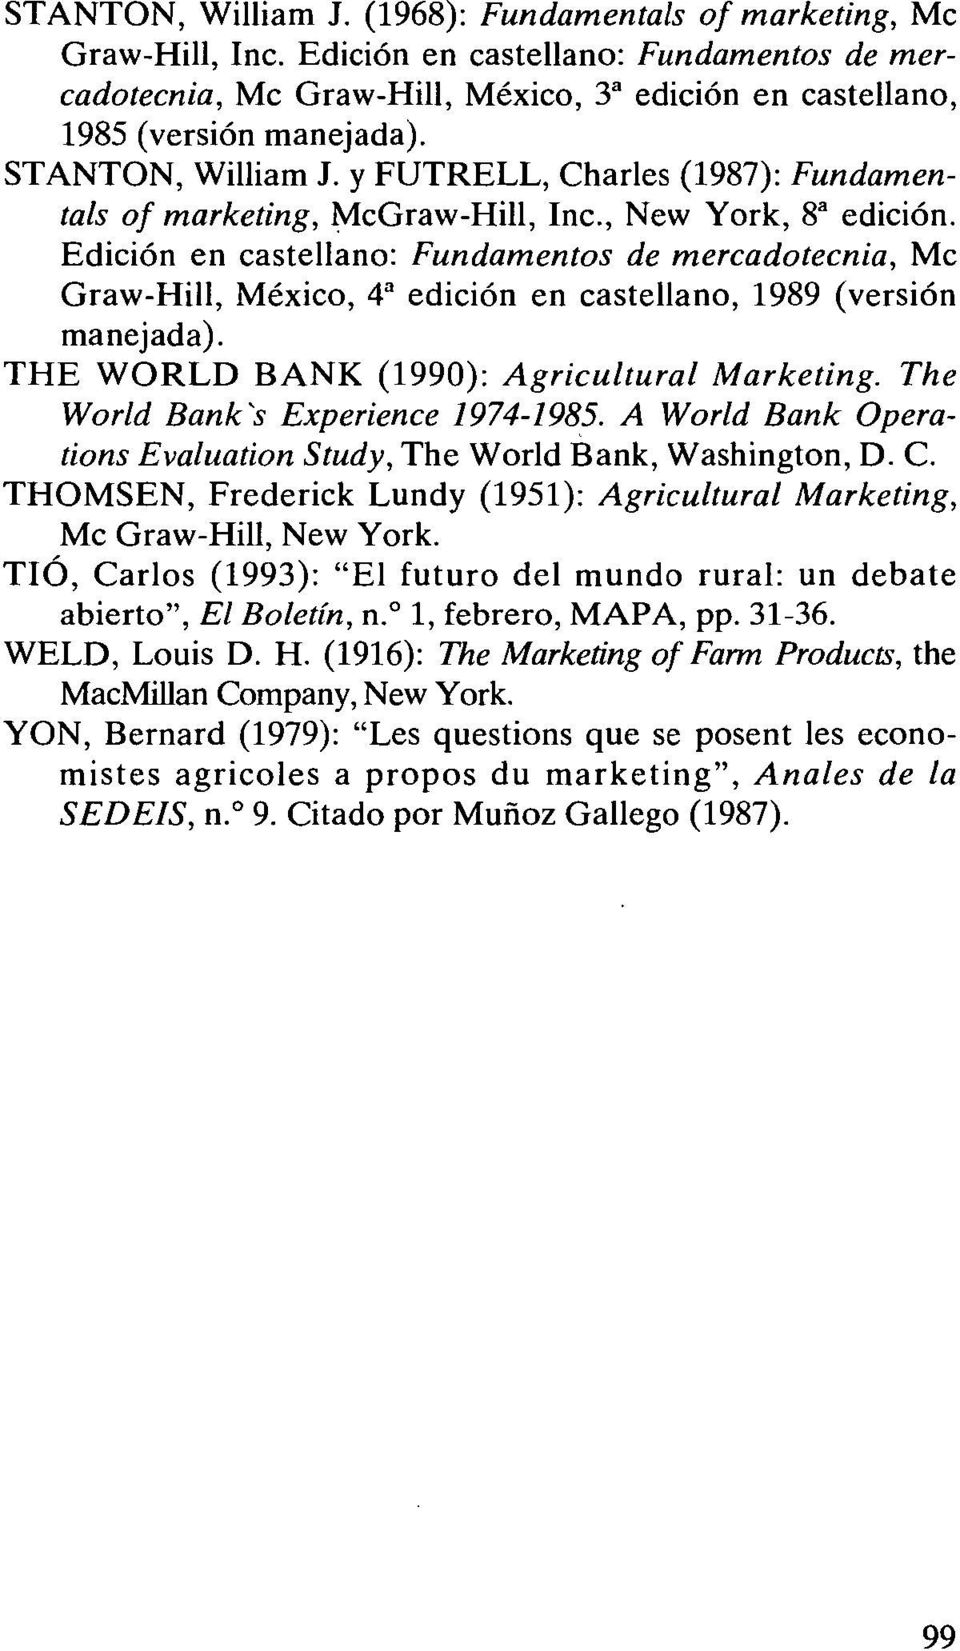 Edición en castellano: Fundamentos de mercadotecnia, Mc Graw-Hill, México, 4^ edición en castellano, 1989 (versión manejada). THE WORLD BANK (1990): Agricultural Marketing.